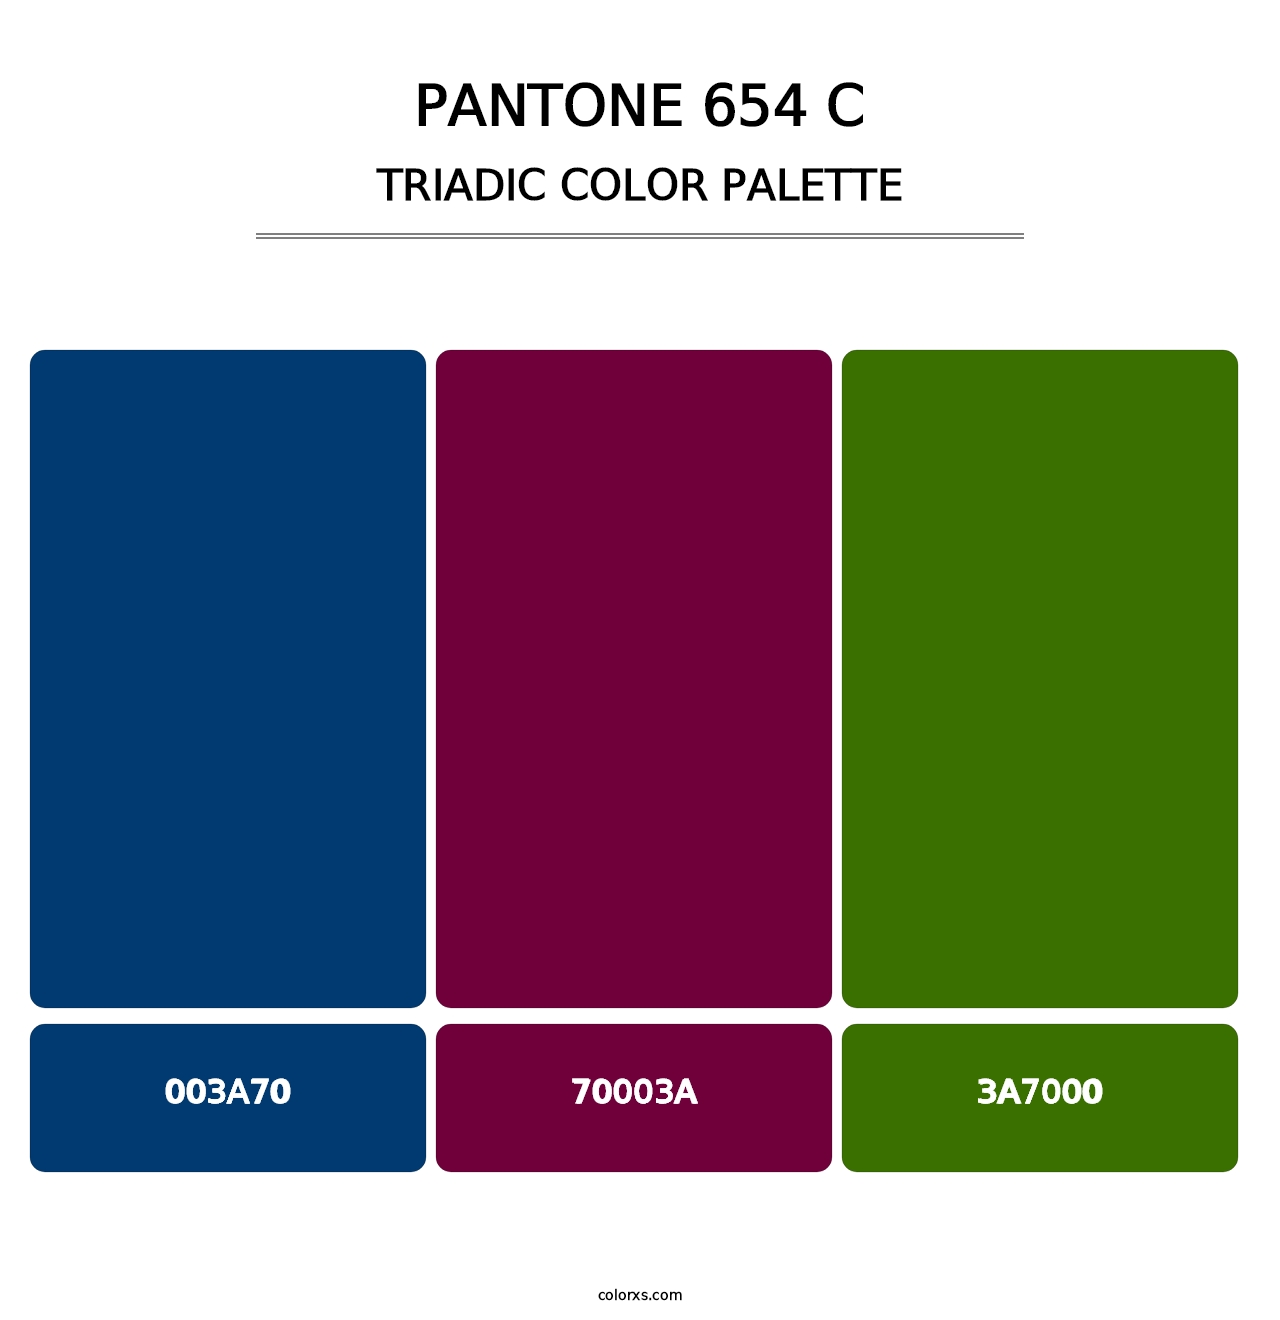 PANTONE 654 C - Triadic Color Palette